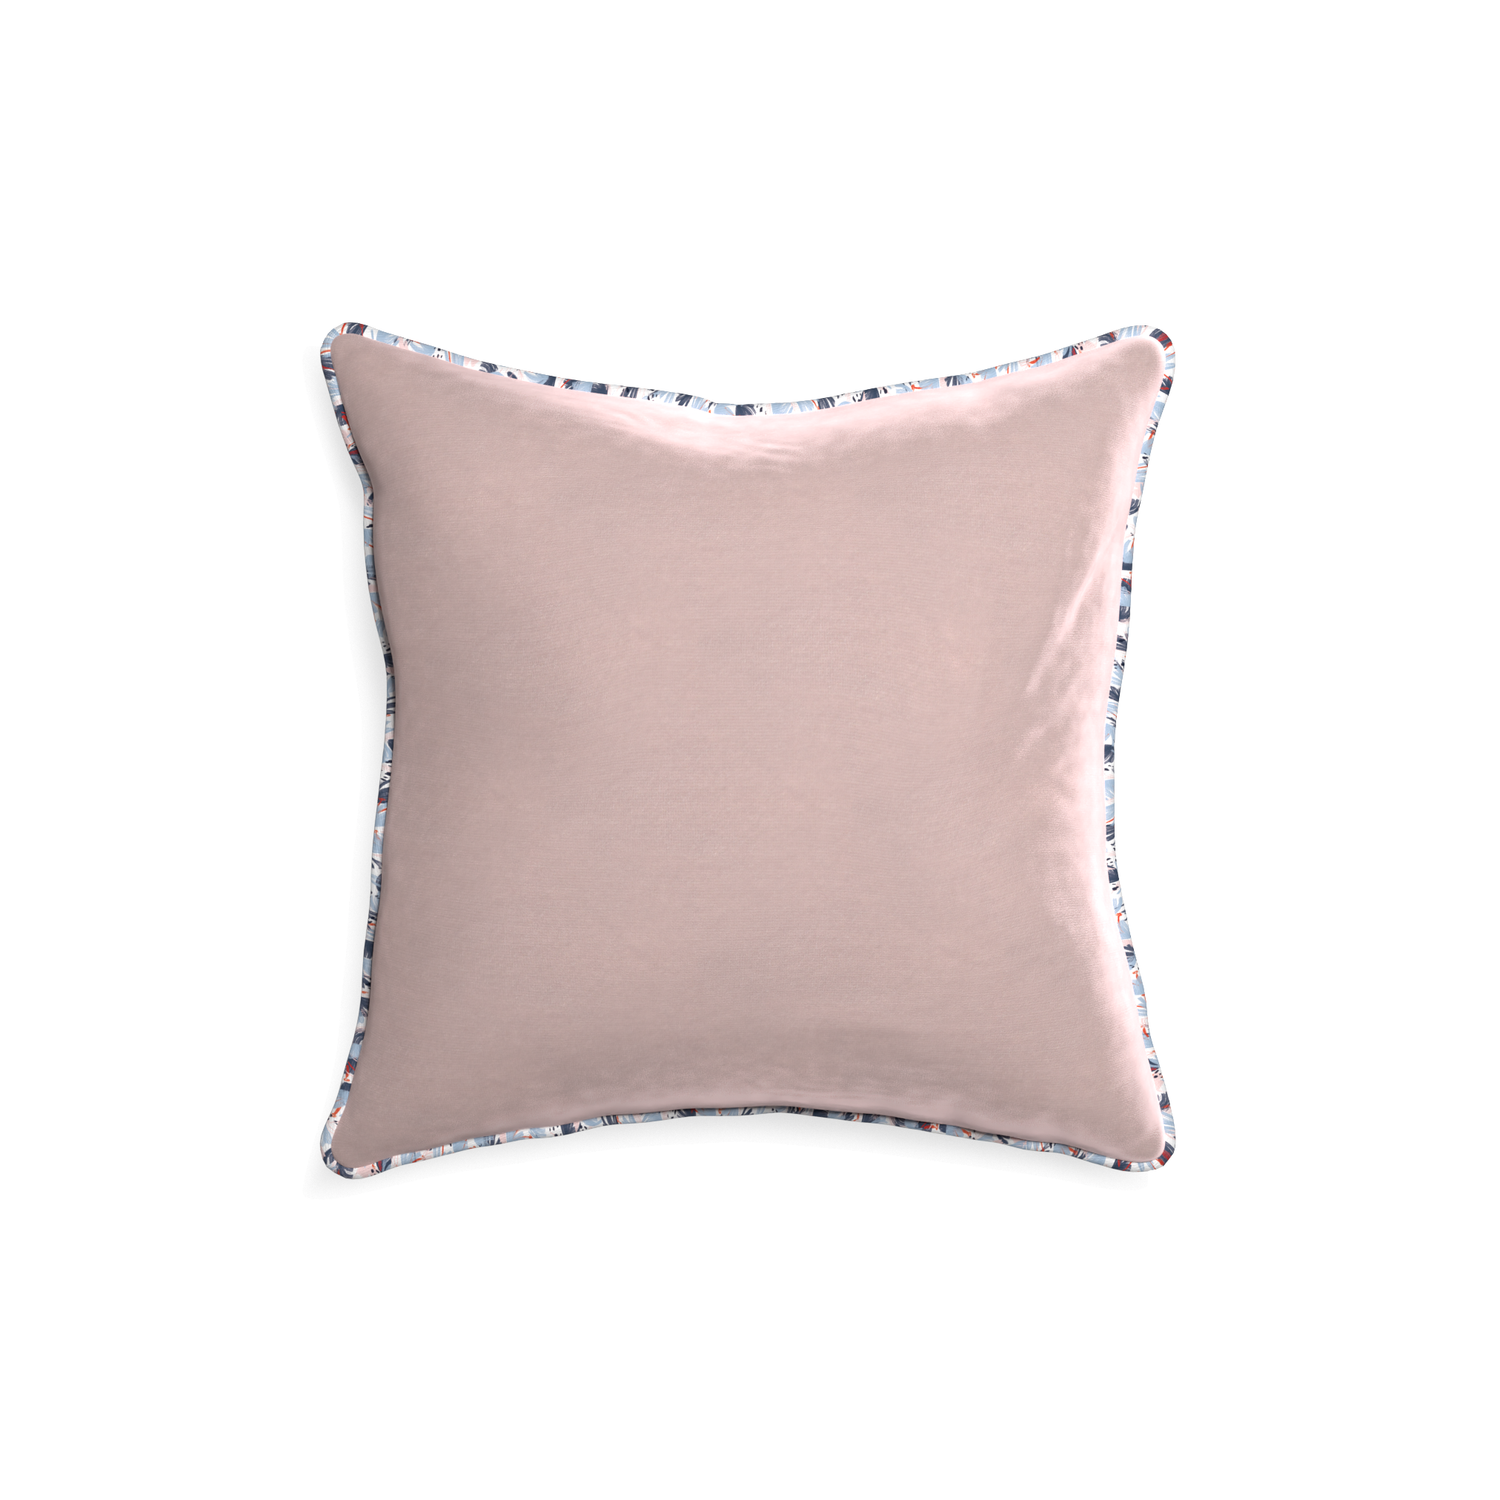 18-square rose velvet custom pillow with e piping on white background